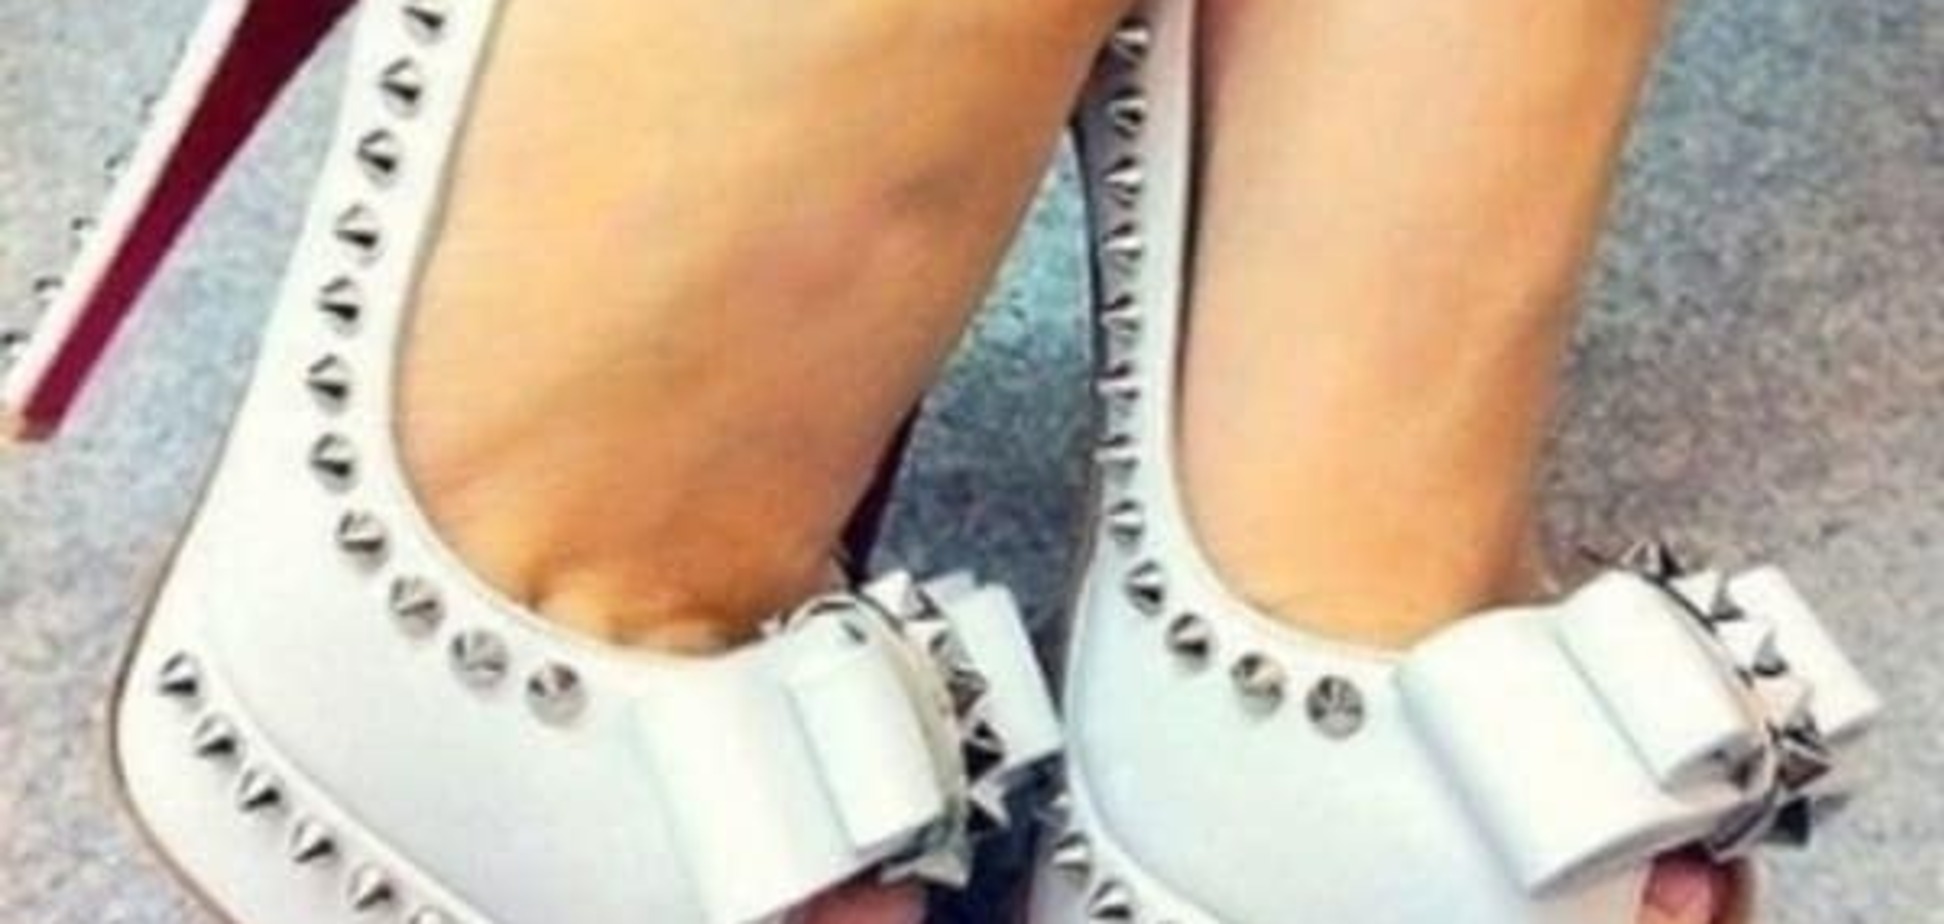 Когтистые пальцы как одно из последствий ношения  обуви на каблуках